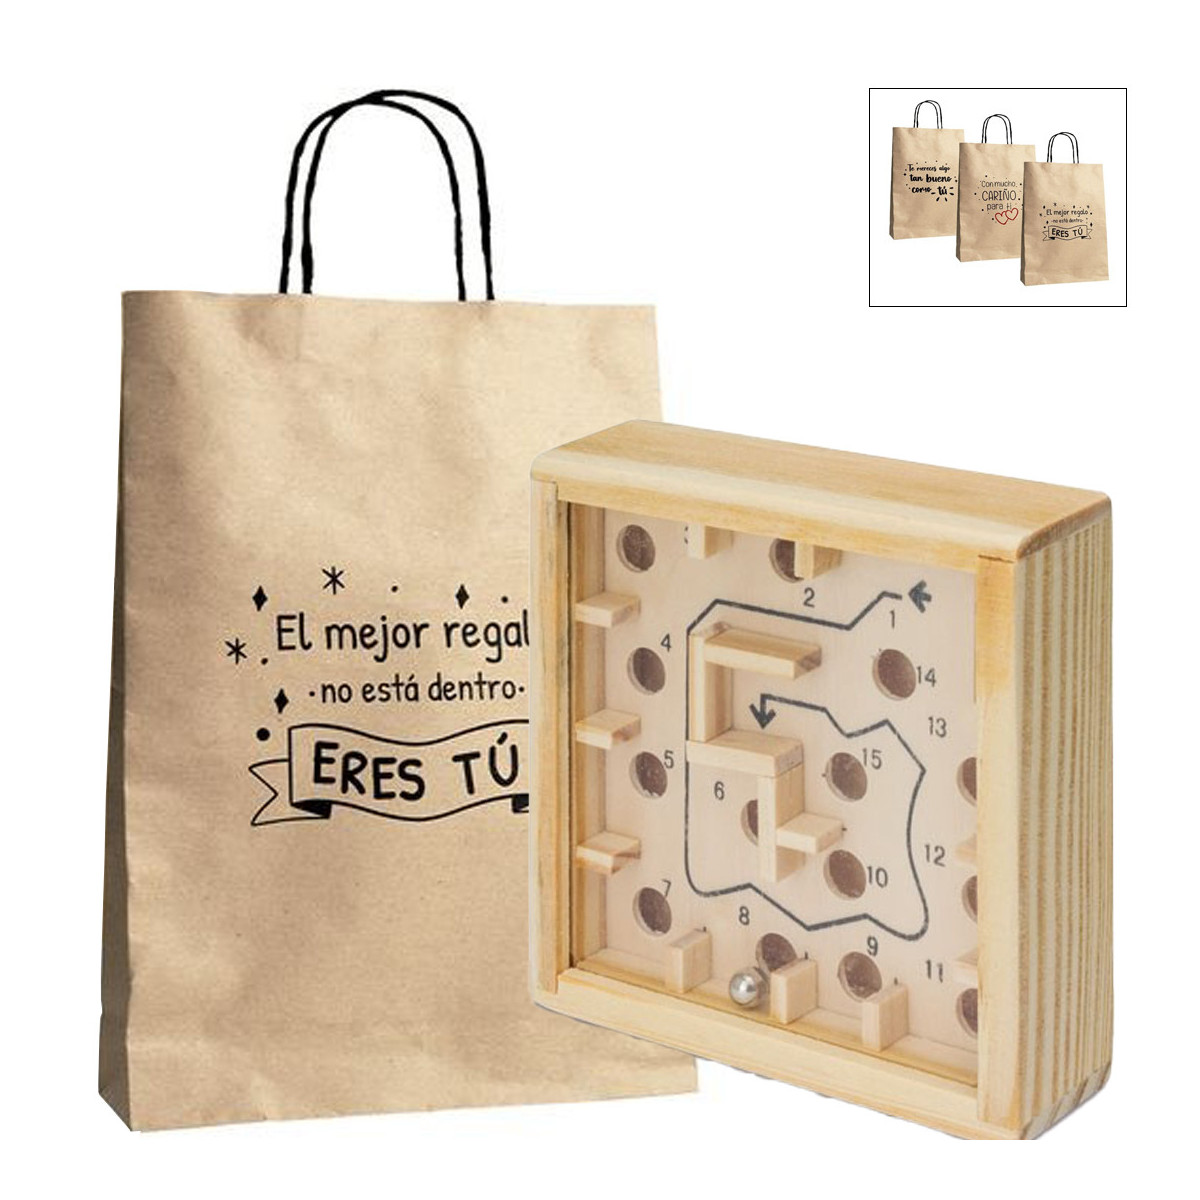 Labirinto con biglie in una scatola di legno e presentato in un sacchetto di carta con messaggi